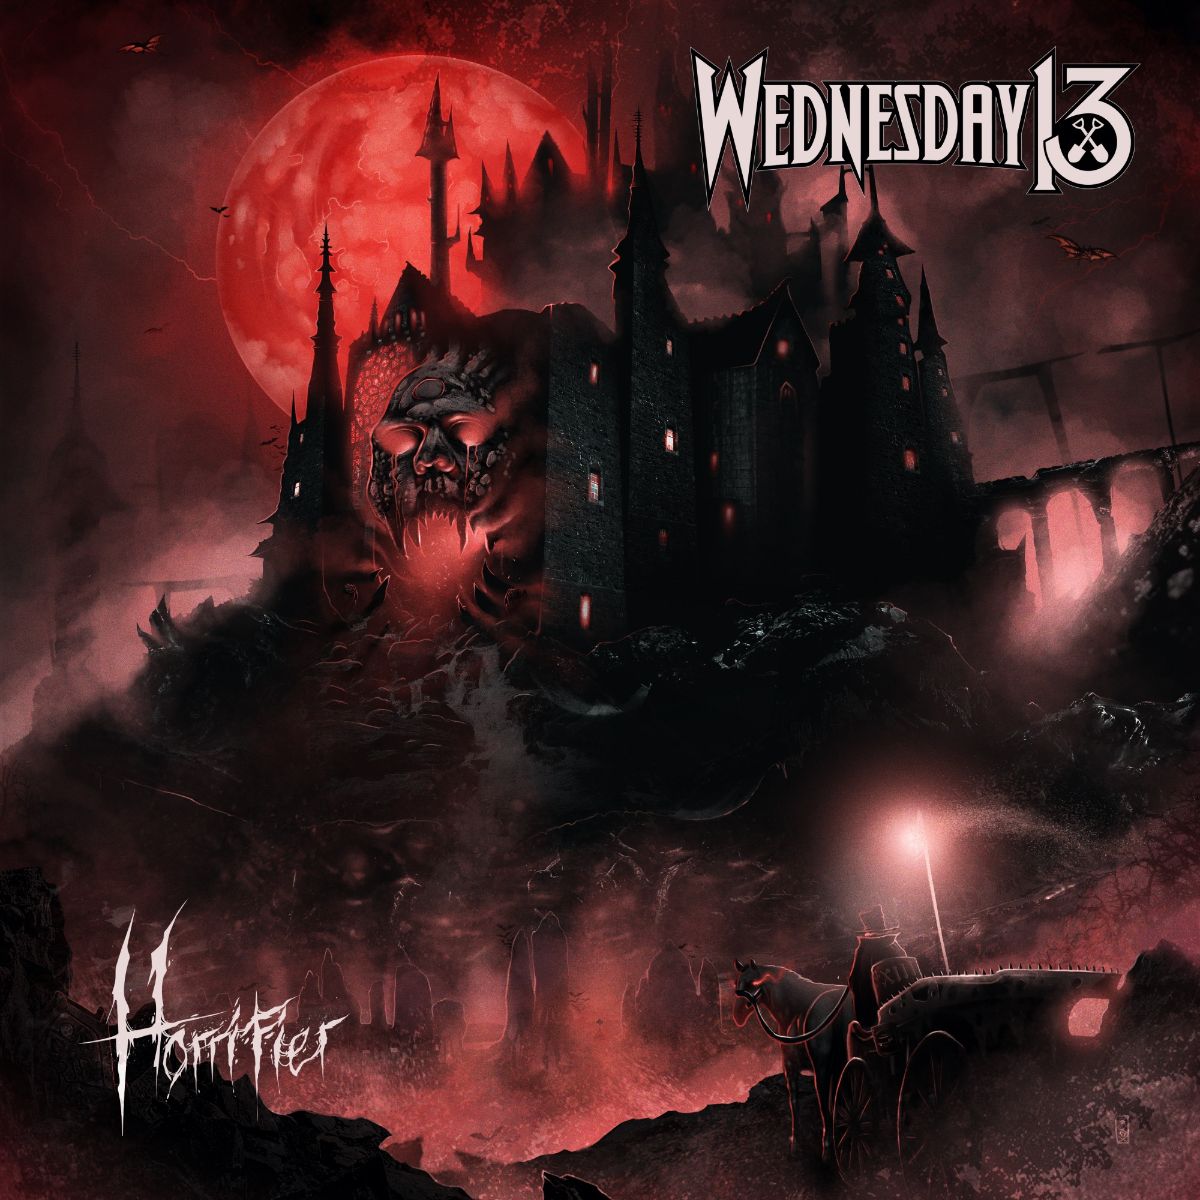 wednesday-13-horrifier-album-cover.jpg